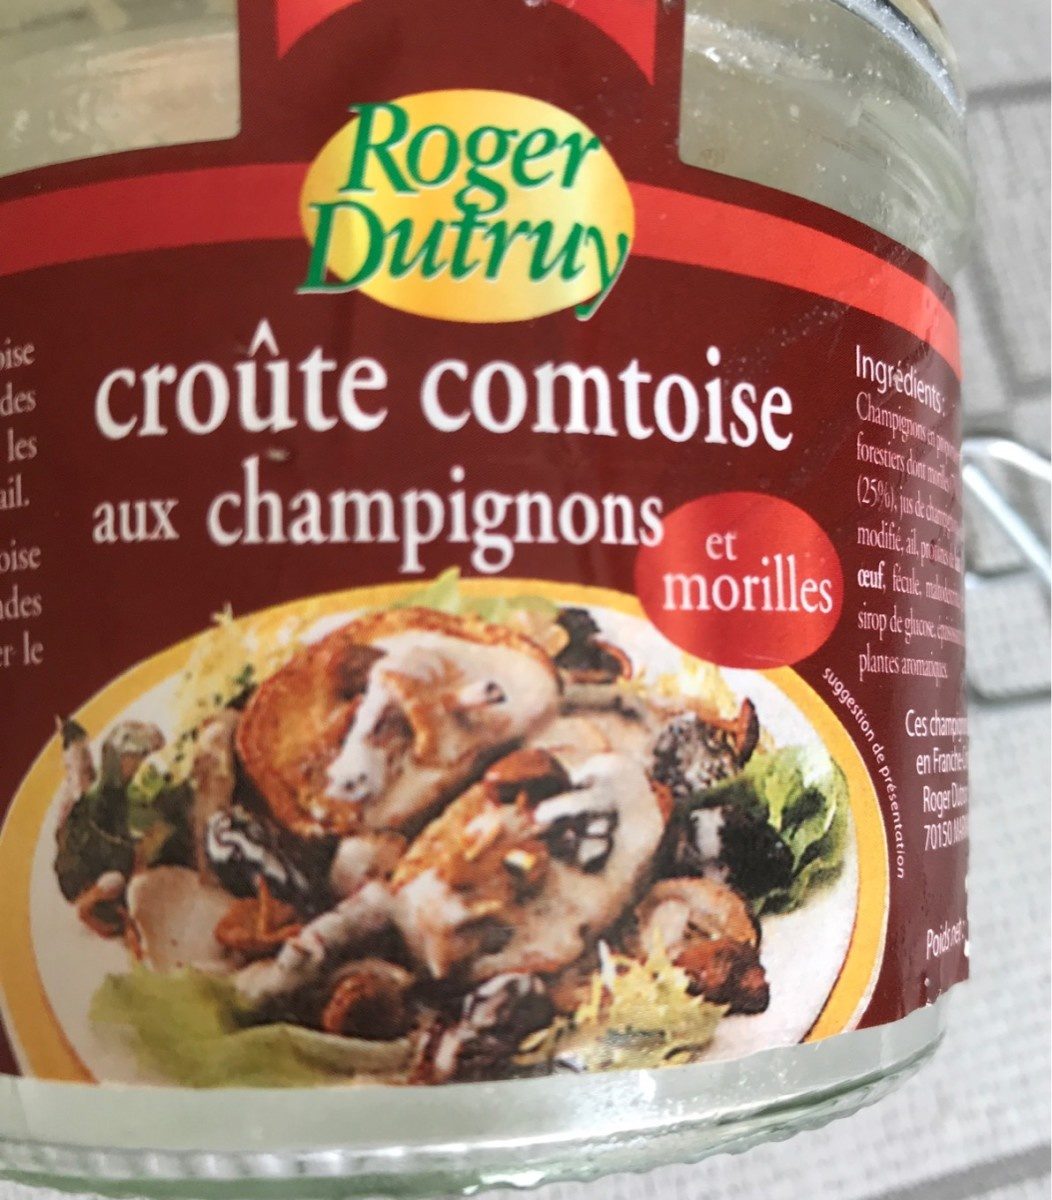 Croute comptoise aux champignons et morilles - Product - fr